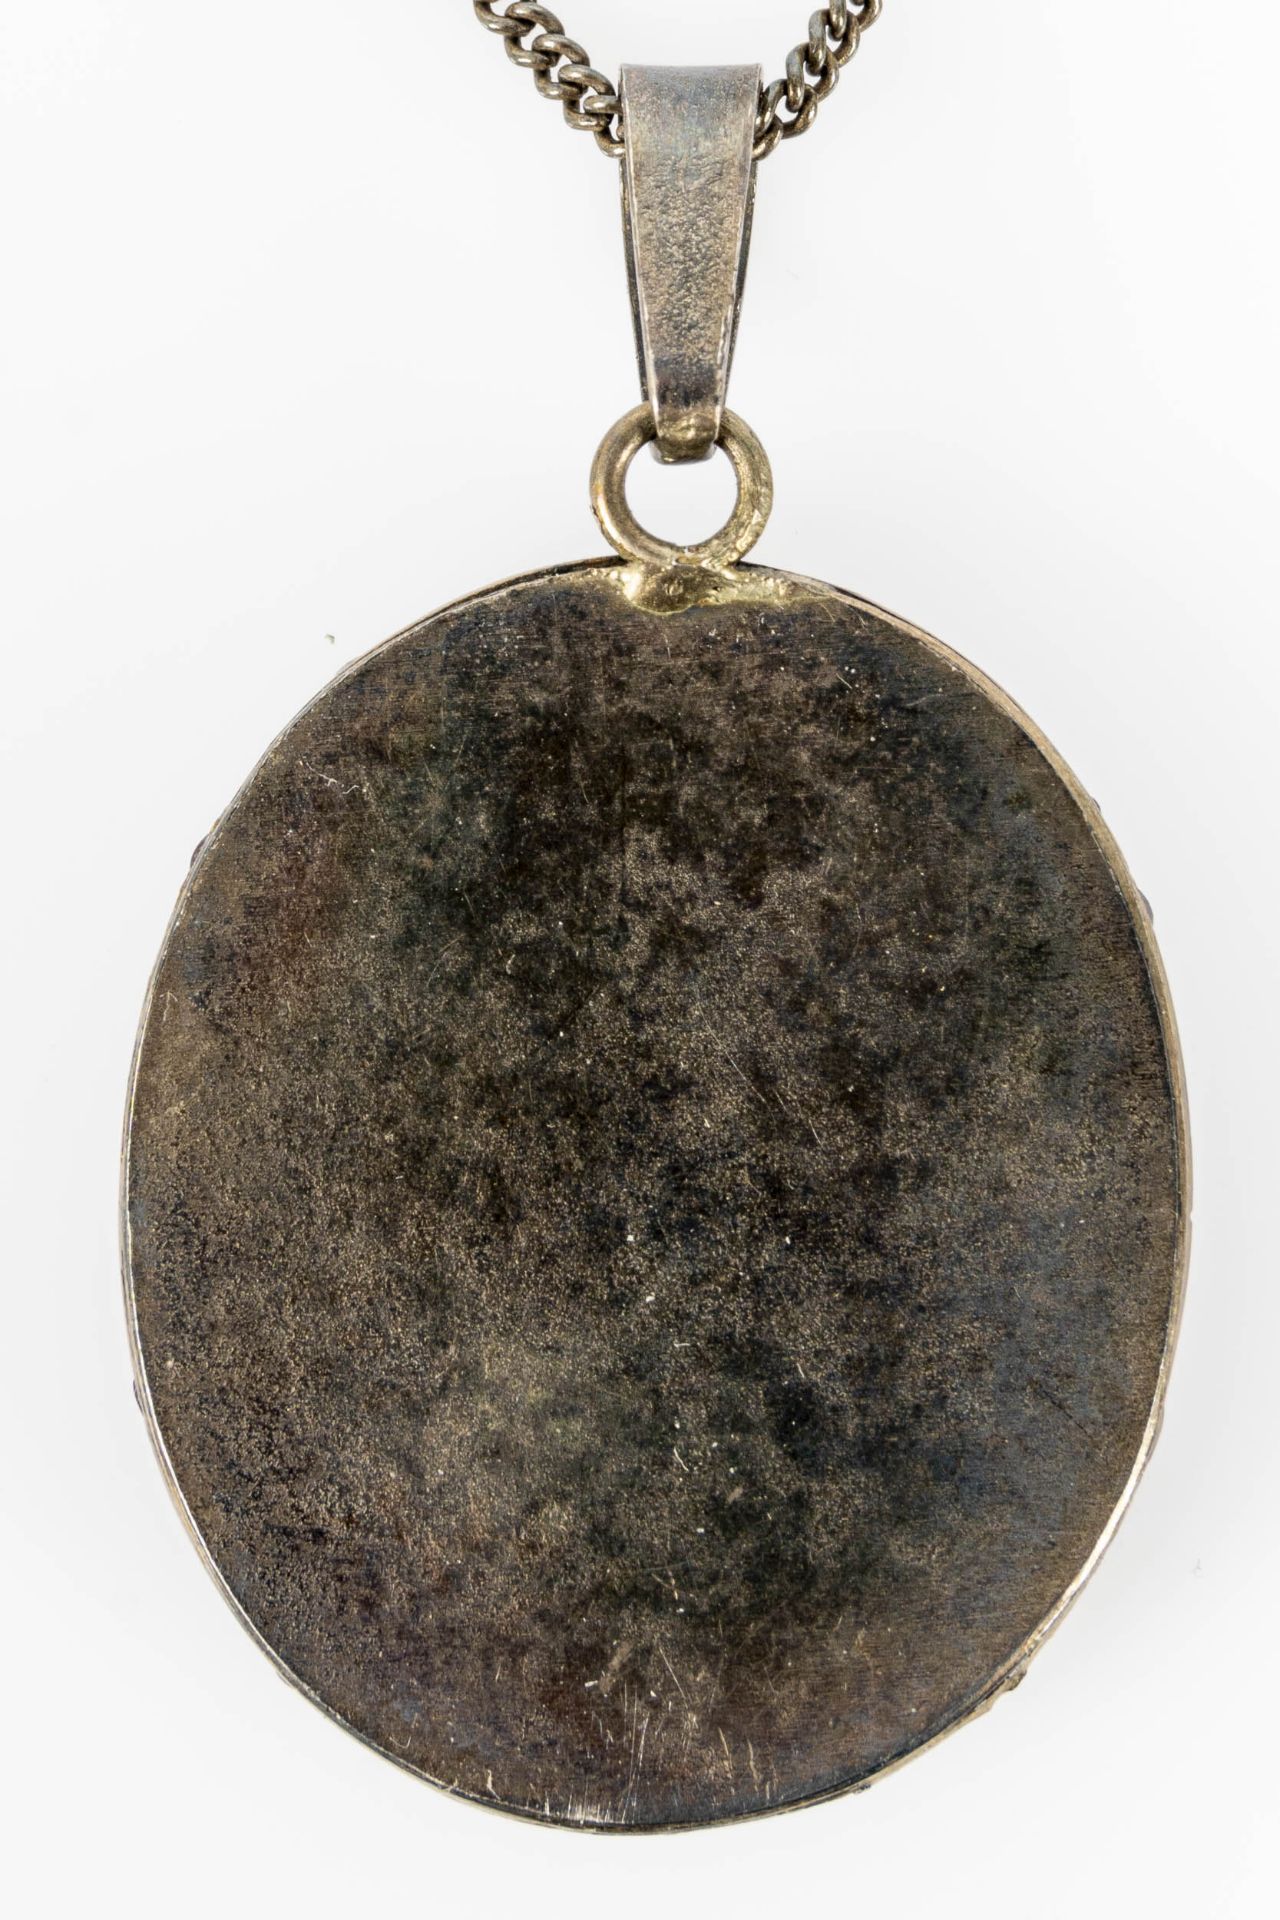 Silberne Halskette/ Gliederkette, Länge ca. 45 cm, mit Granat besetztem ovalem Kettenanhänger an be - Bild 6 aus 7